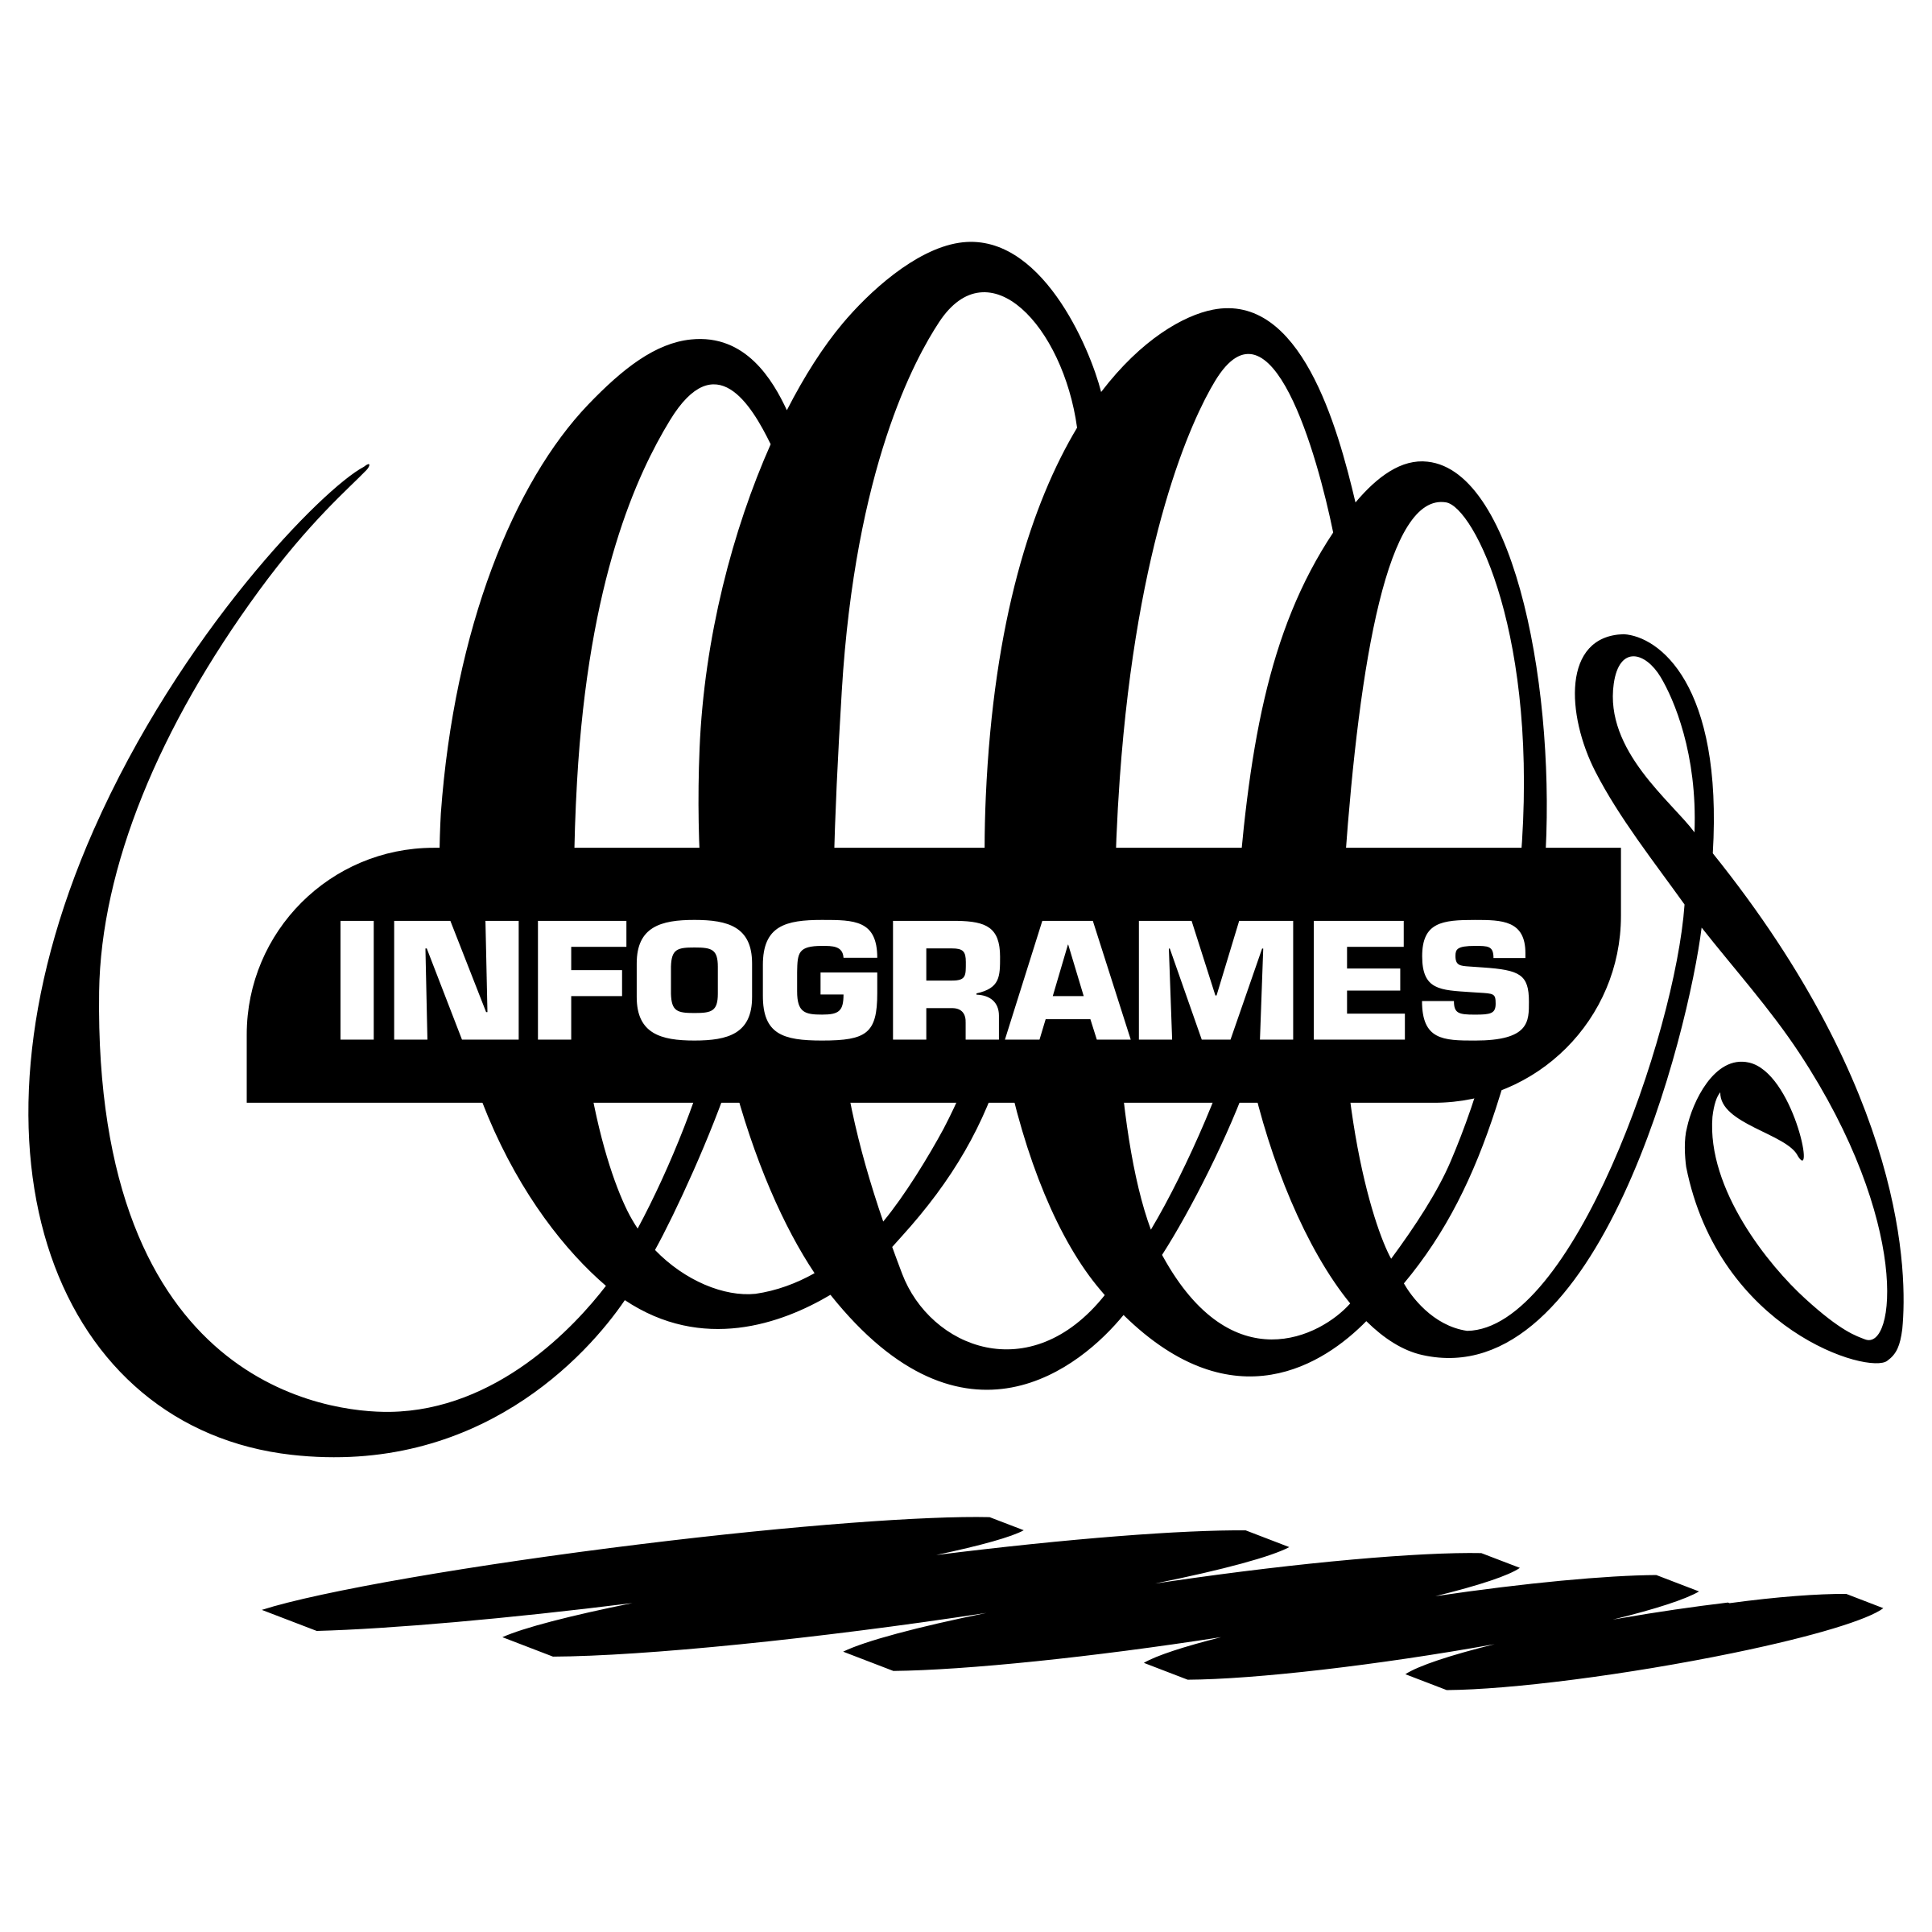 Infogrames Logo - Infogrames Logo PNG Transparent & SVG Vector - Freebie Supply